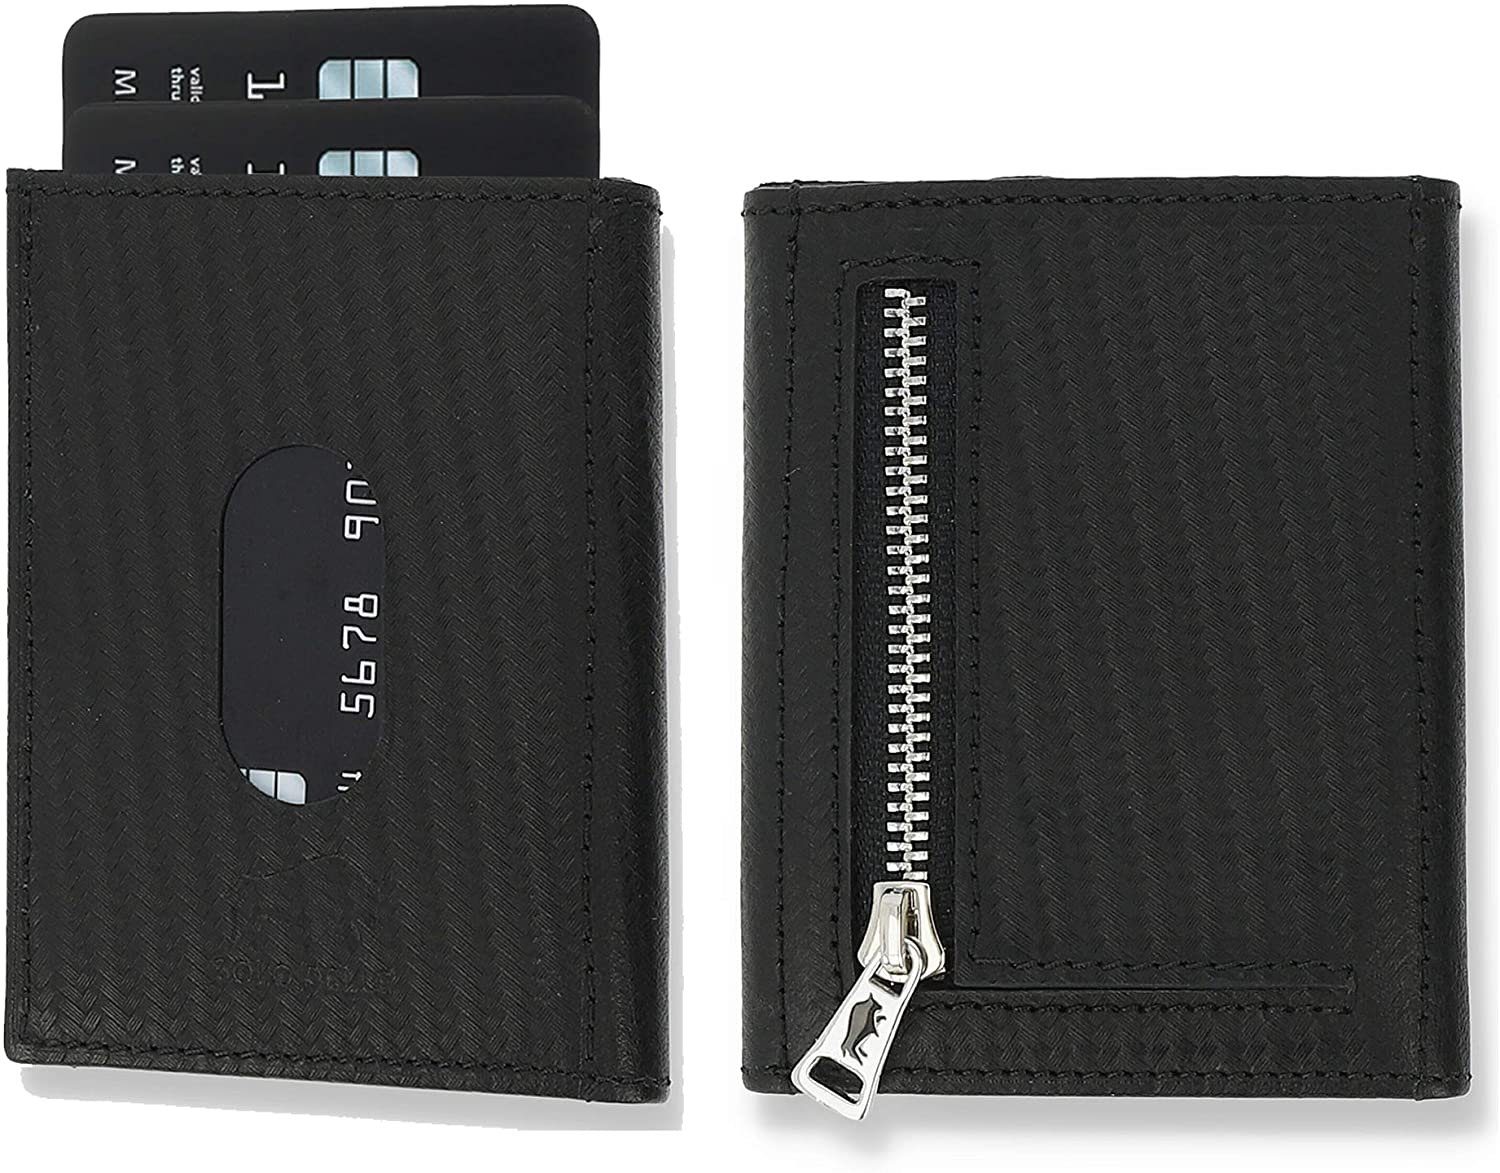 Solo Pelle Brieftasche Slim Wallet mit Münzfach [12 Karten] Slimwallet Riga [RFID-Schutz], echt Leder, RFID Schutz, Macde in Europe Carbonprägung